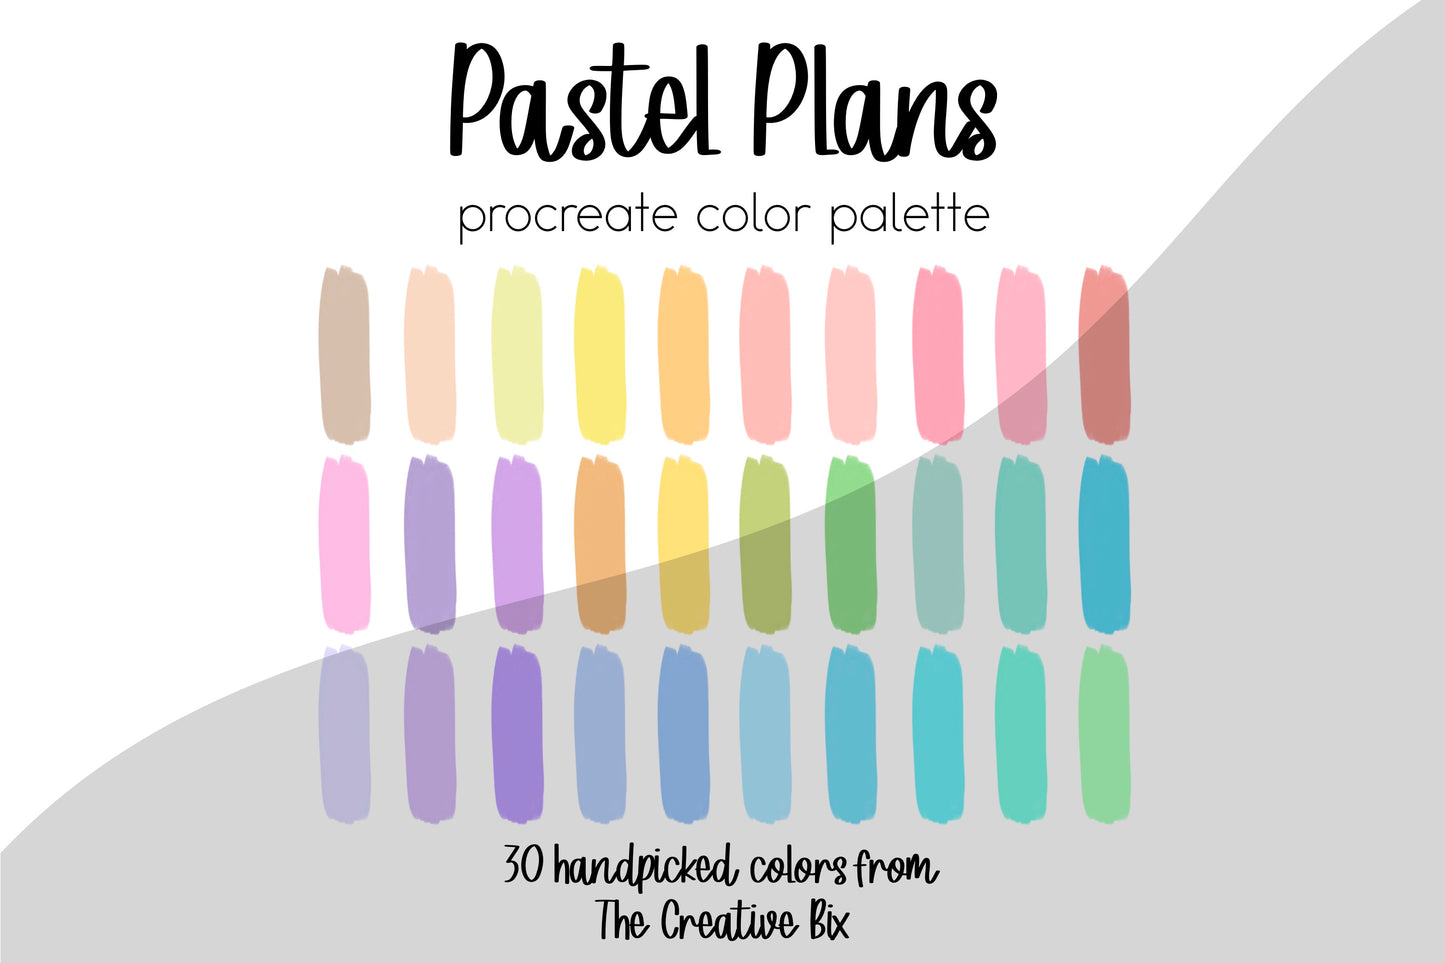 Pastel Plans Procreate Palette